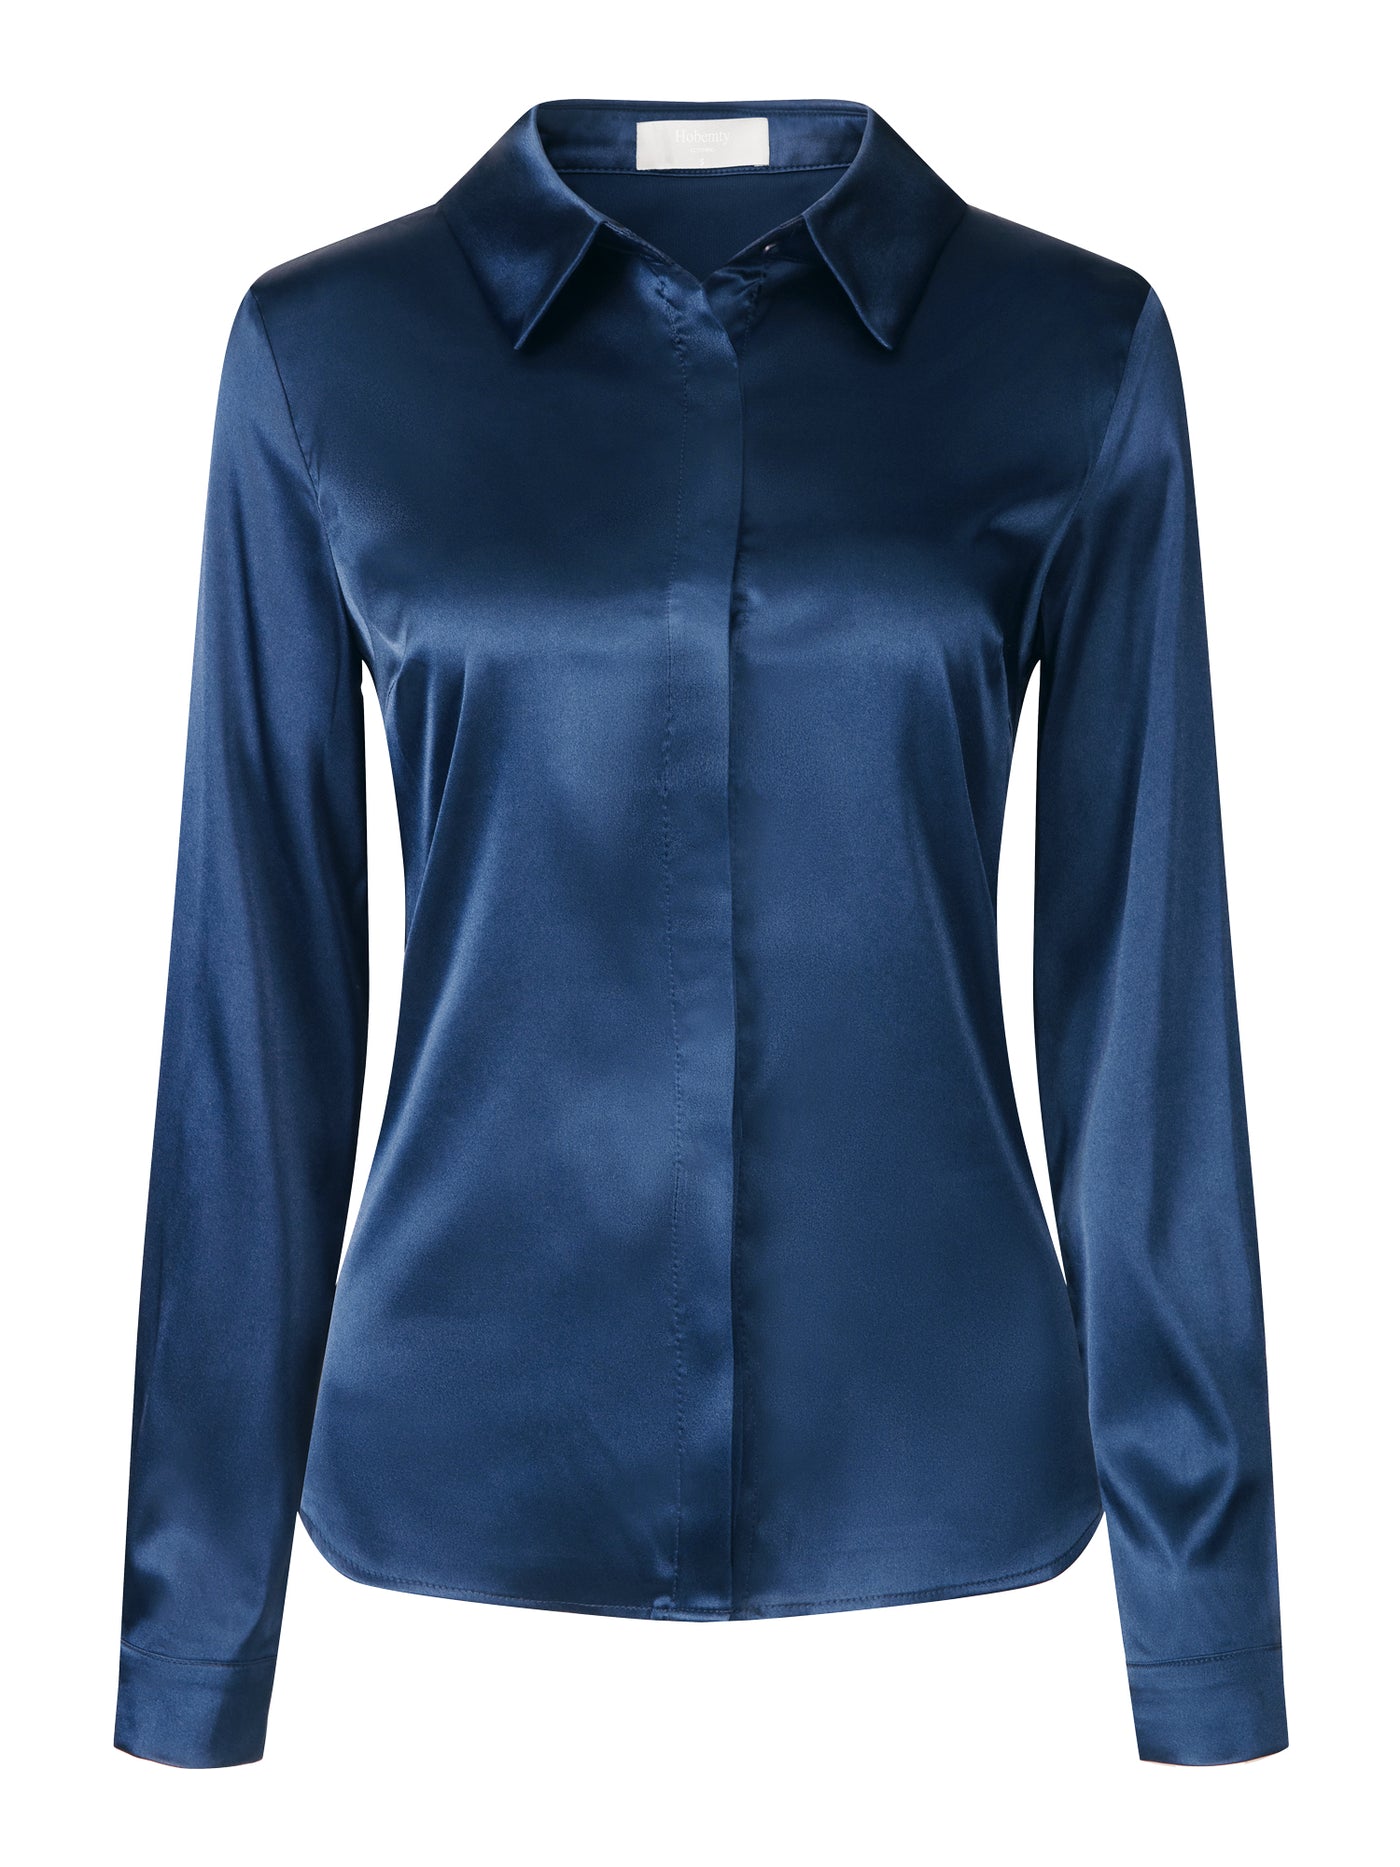 Bublédon Women's Satin Blouse Long Sleeve Work Office Button Down Shirt Top